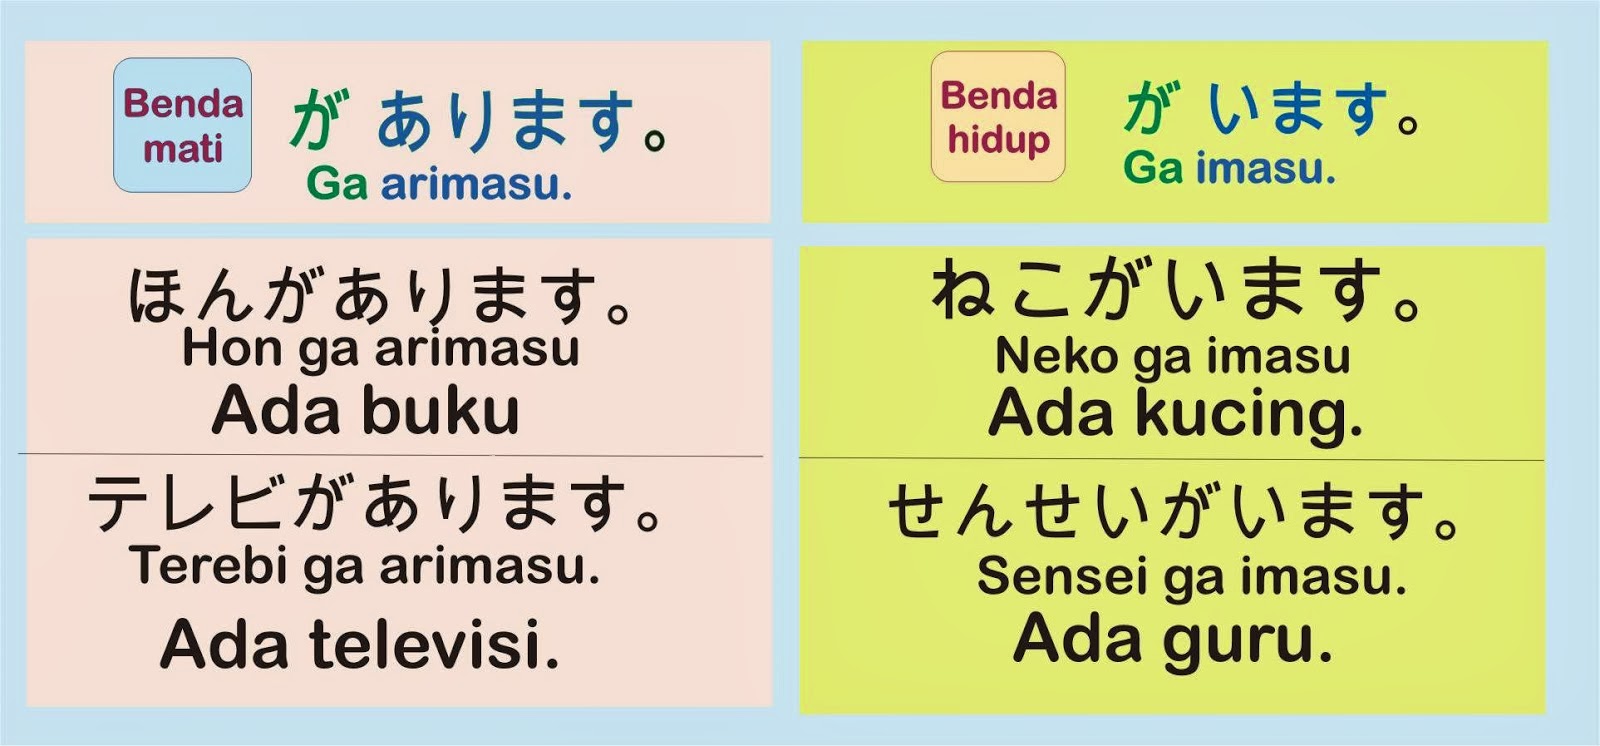 Kata Kata Mutiara Bahasa Jepang Dan Artinya Terbaru Paling